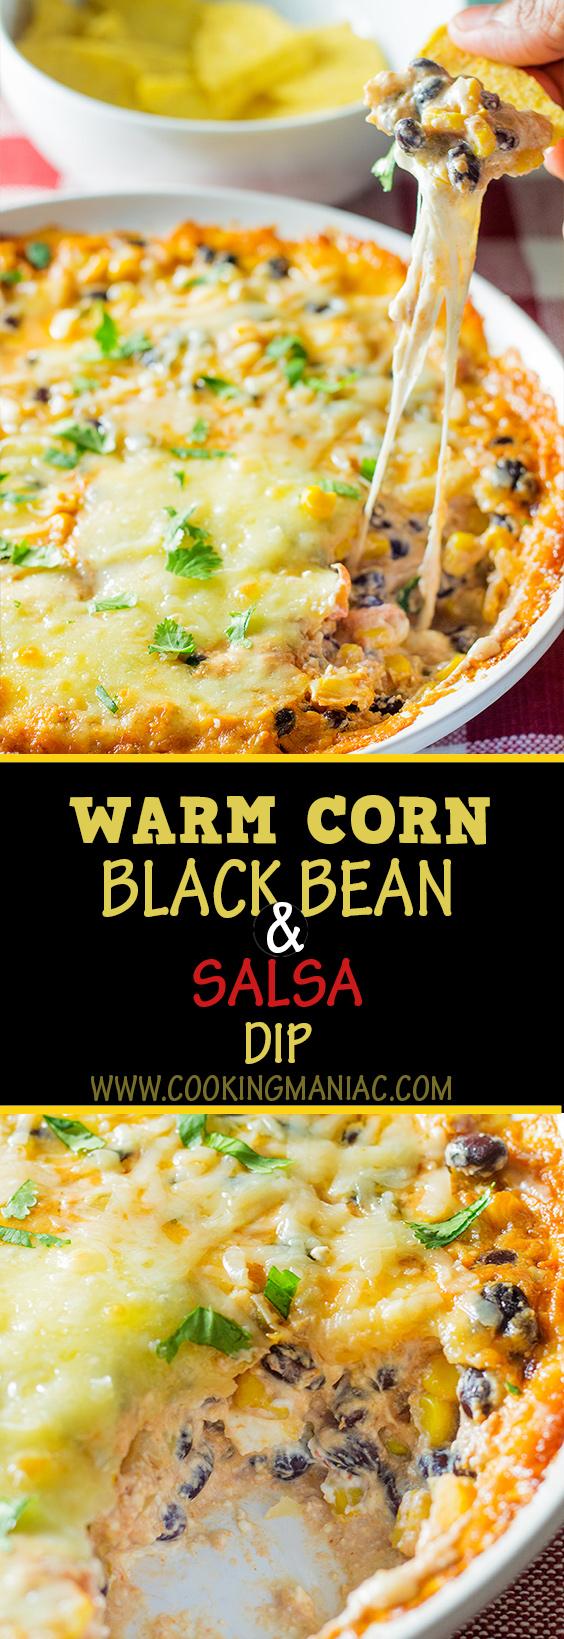 warm-corn-and-black-bean-and-sala-dip-long-pin